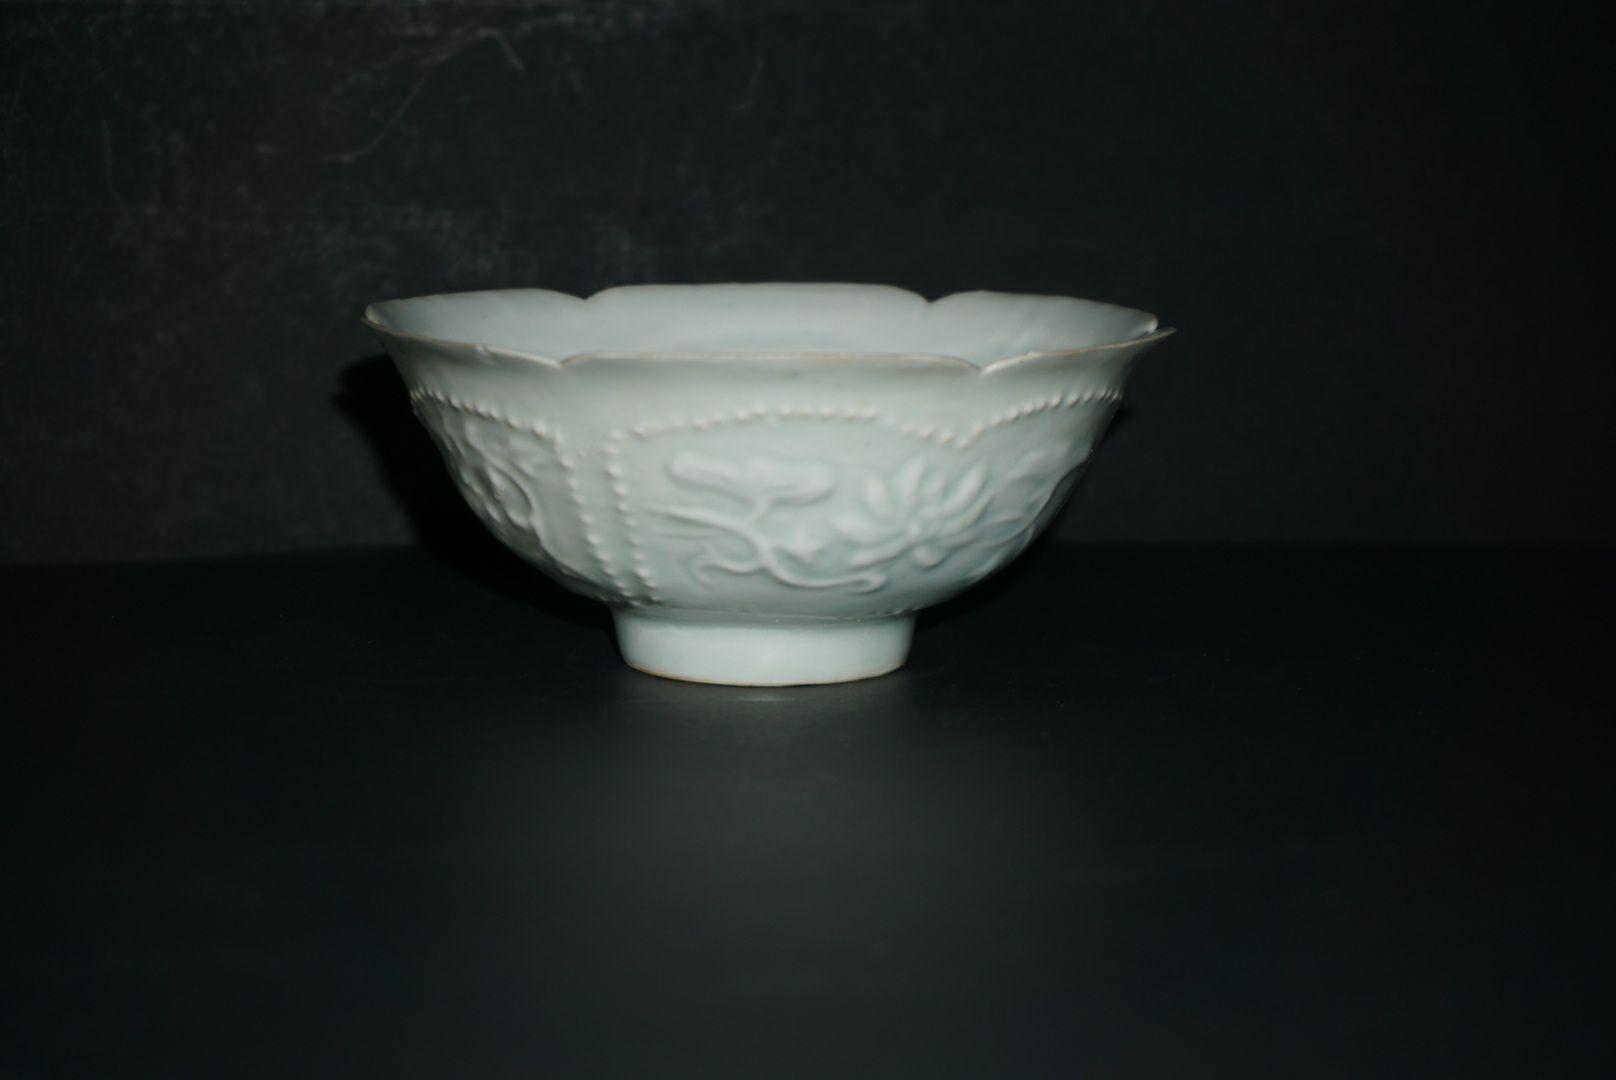 愛用中國宋時代葵口碗6 青白瓷薄胎陰刻放射幾何紋/ 影青宋 